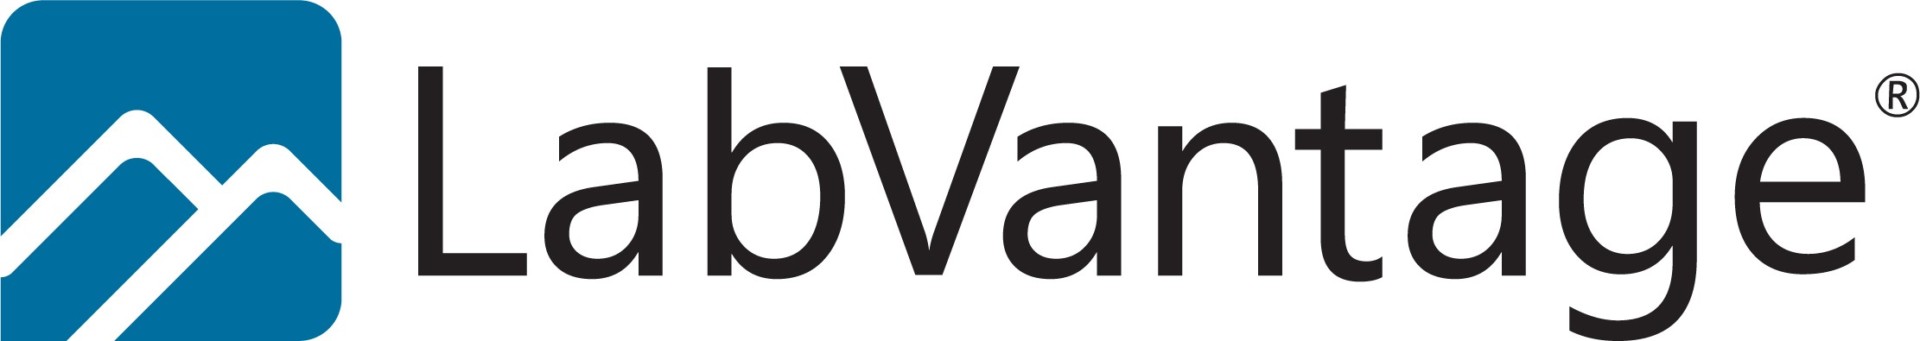 LabVantage-Logo-May-2017-a668ea